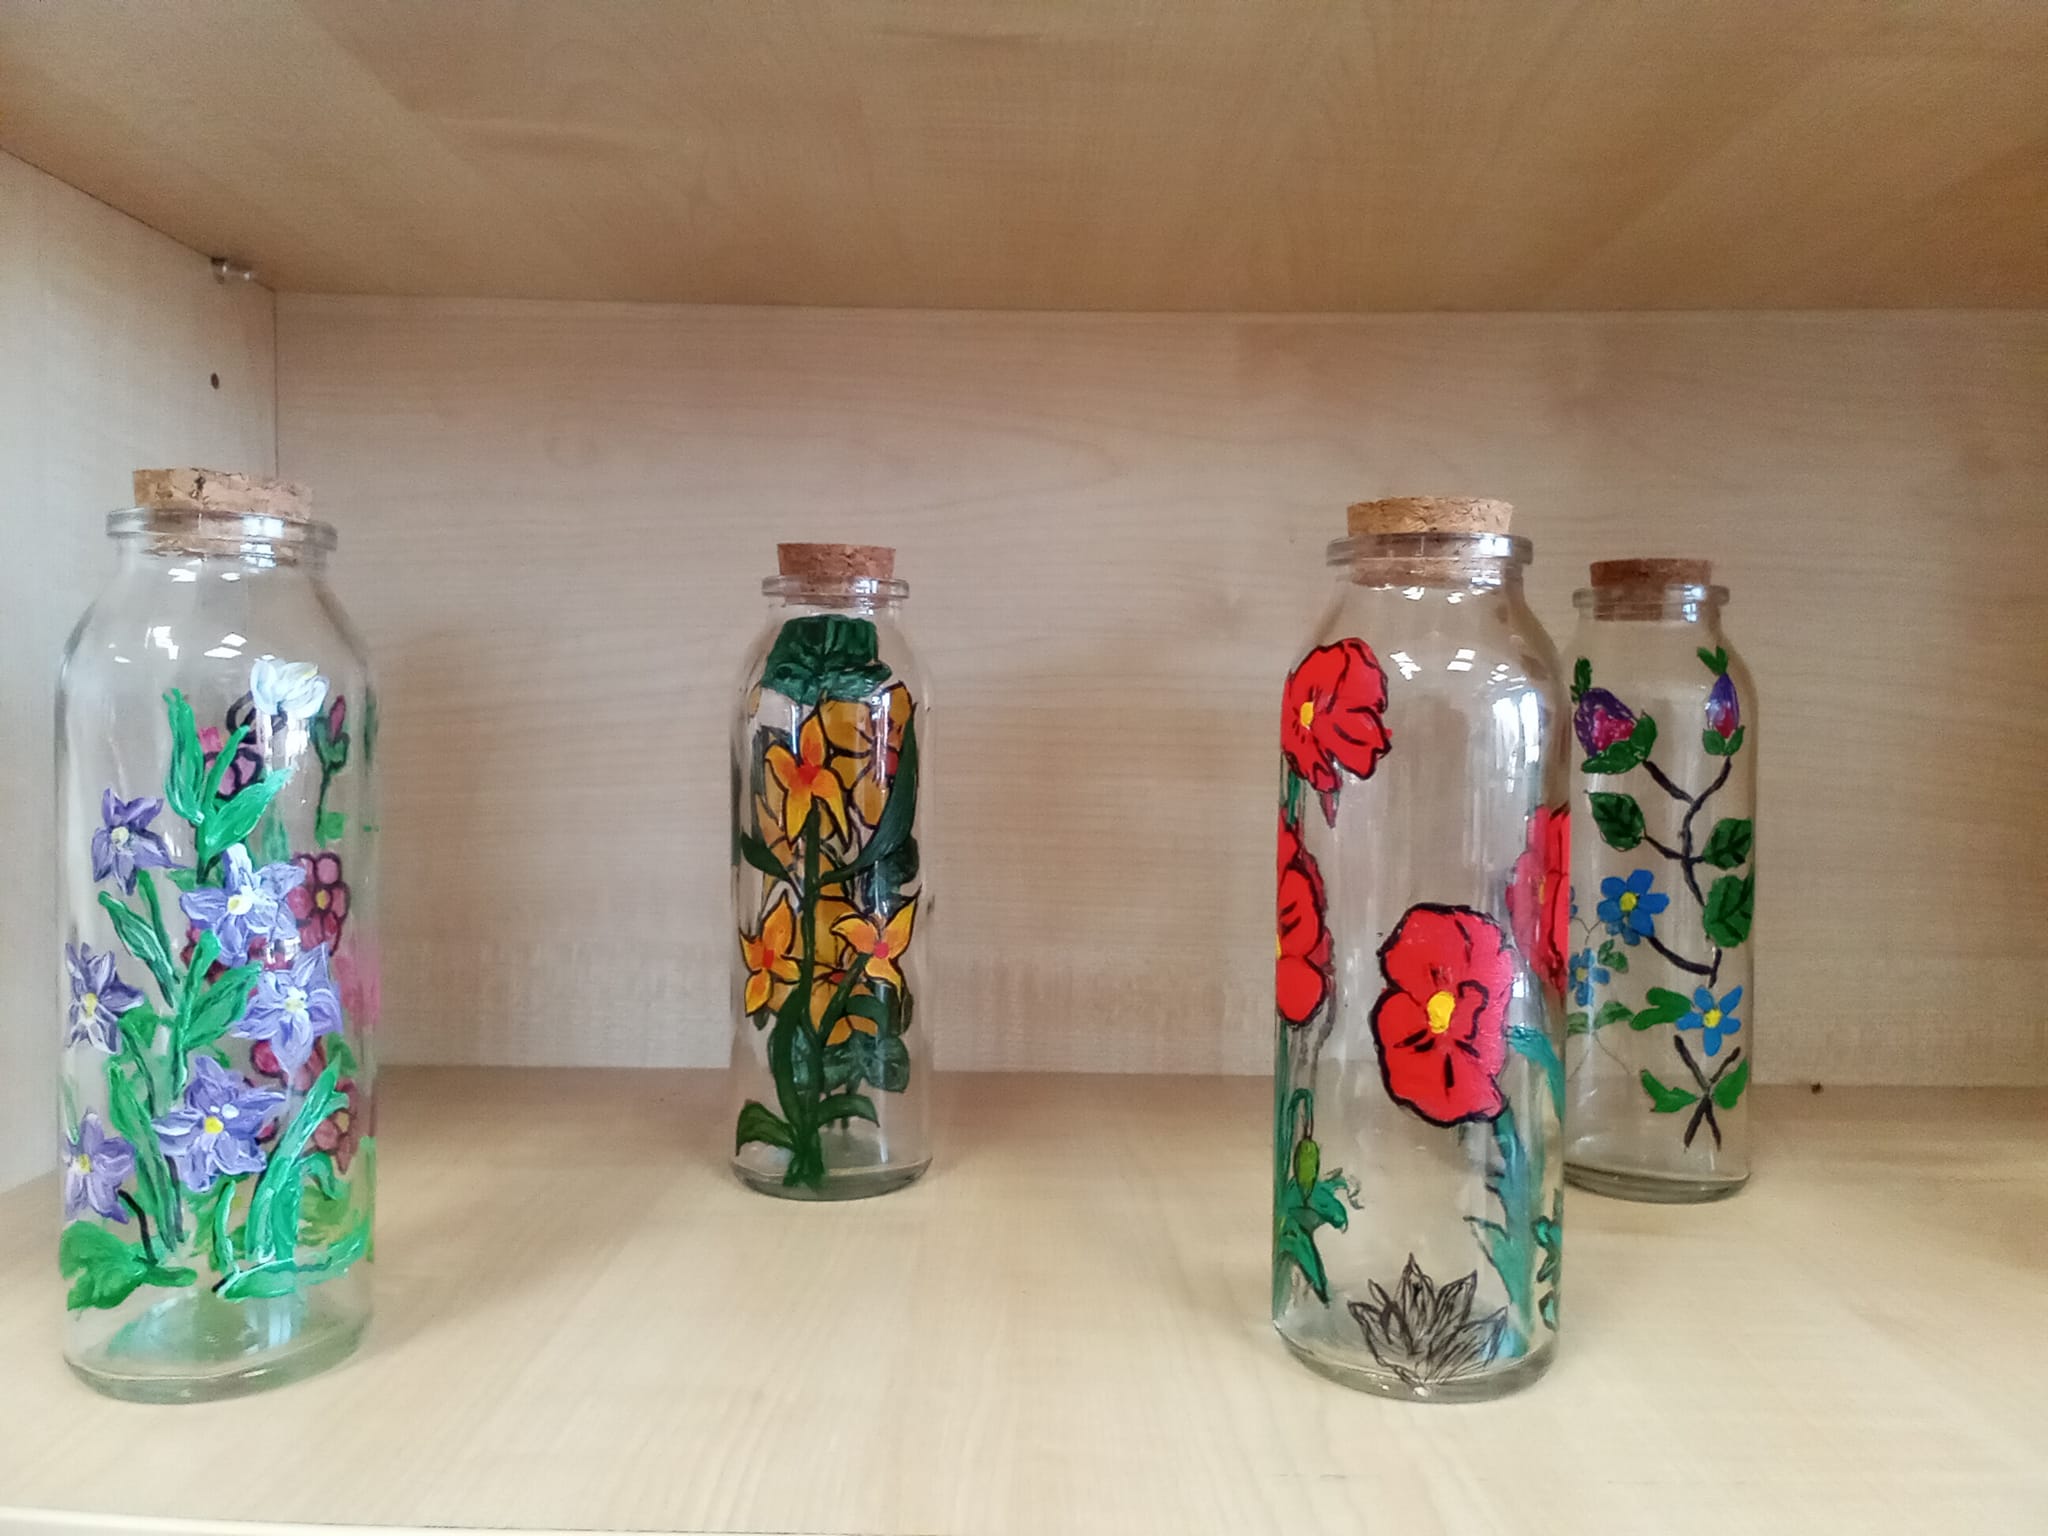 Na regale stoją 4 buteleczki, malowane różnymi kolorami farb. Na wszystkich występuje motyw kwiatowy.